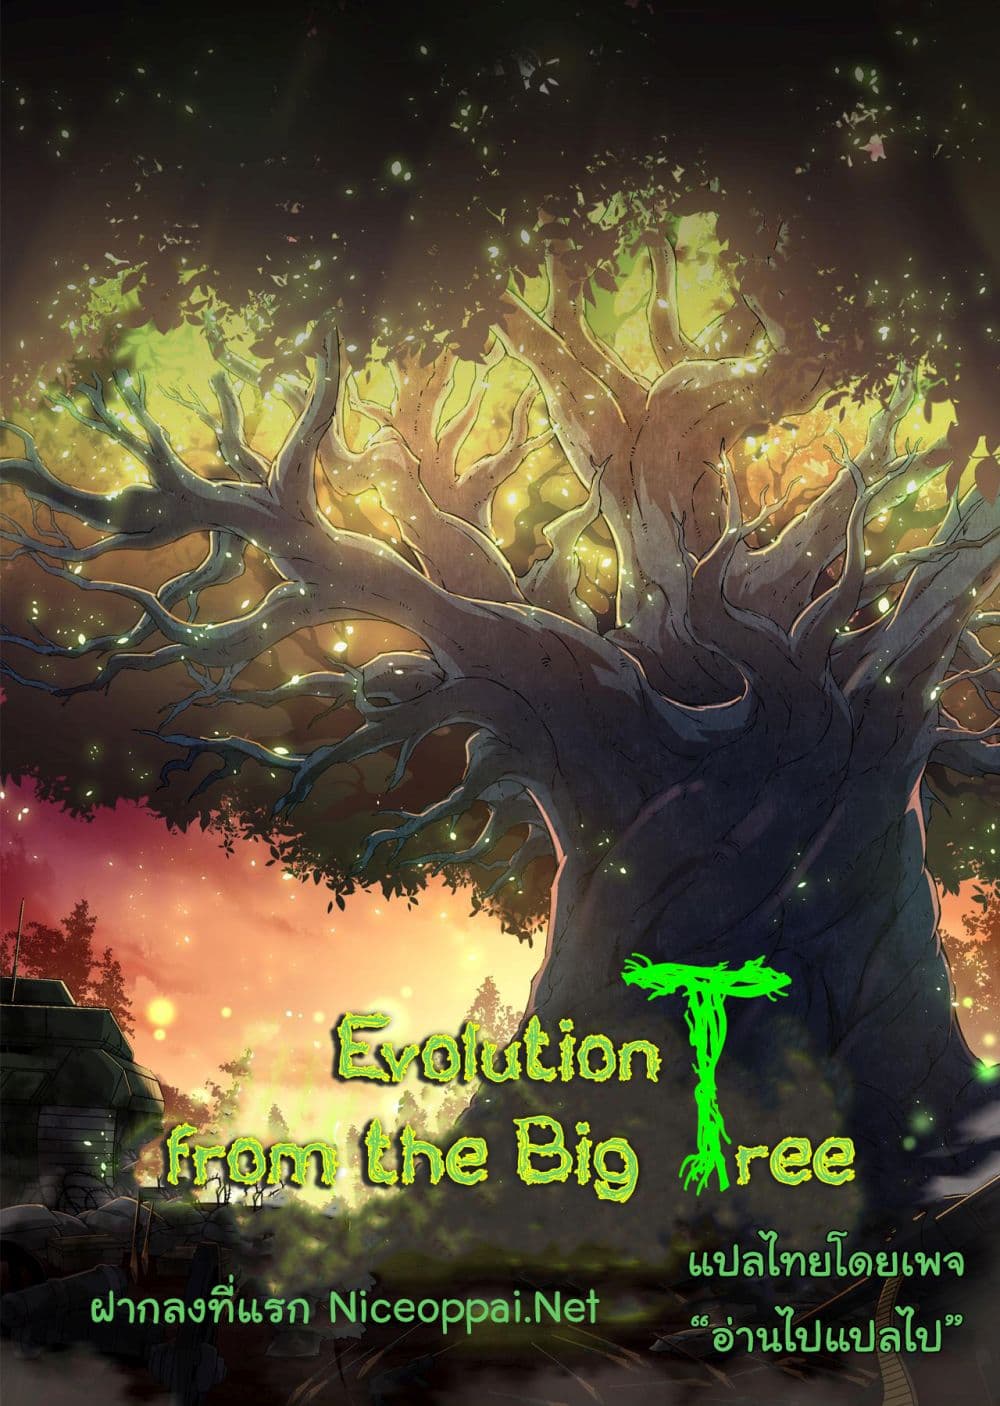 Evolution from the Big Tree Ã Â¸â€¢Ã Â¸Â­Ã Â¸â„¢Ã Â¸â€”Ã Â¸ÂµÃ Â¹Ë† 30 (44)